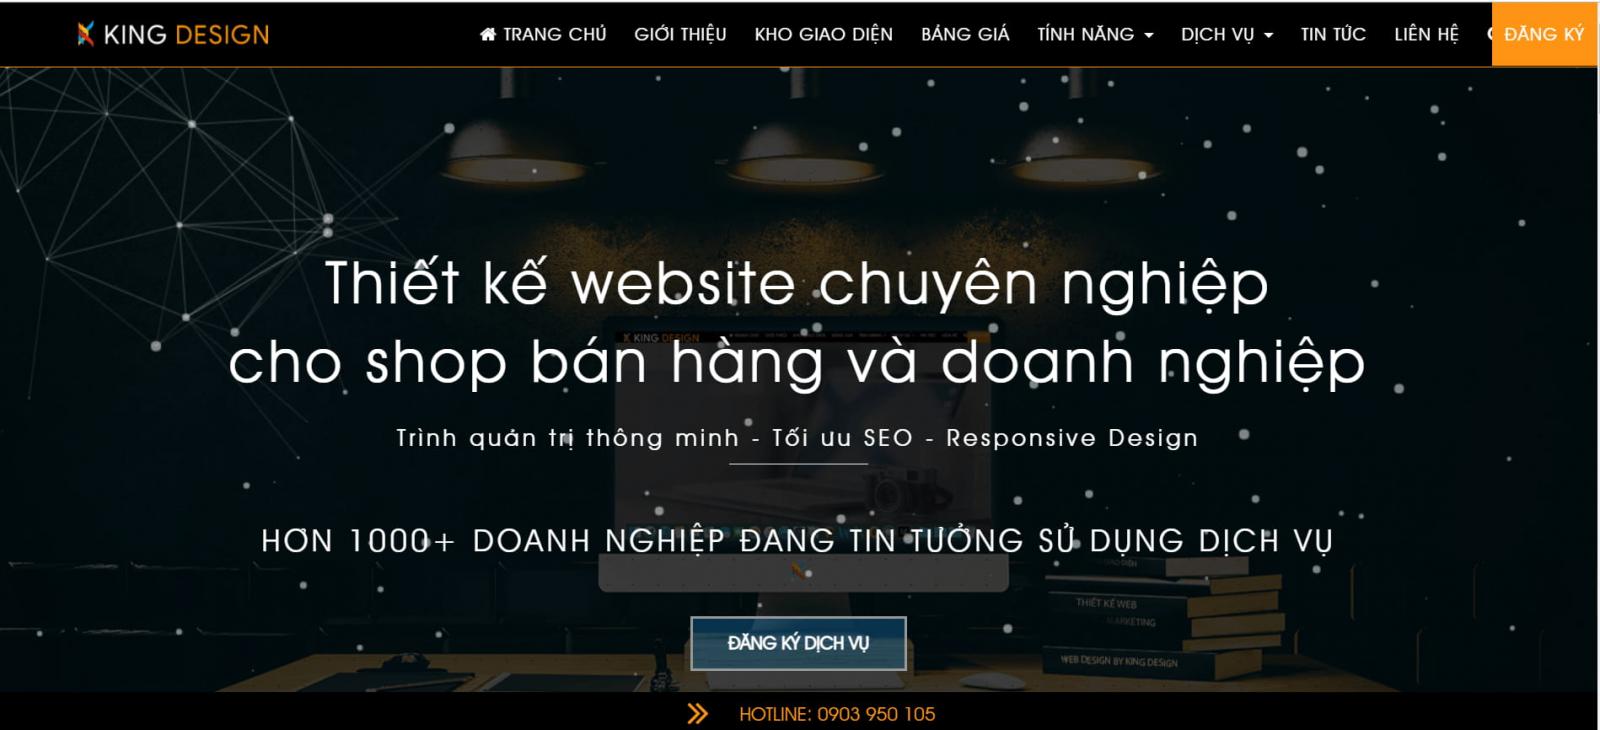 Dịch vụ thiết kế Web tại Cần Thơ - King Design